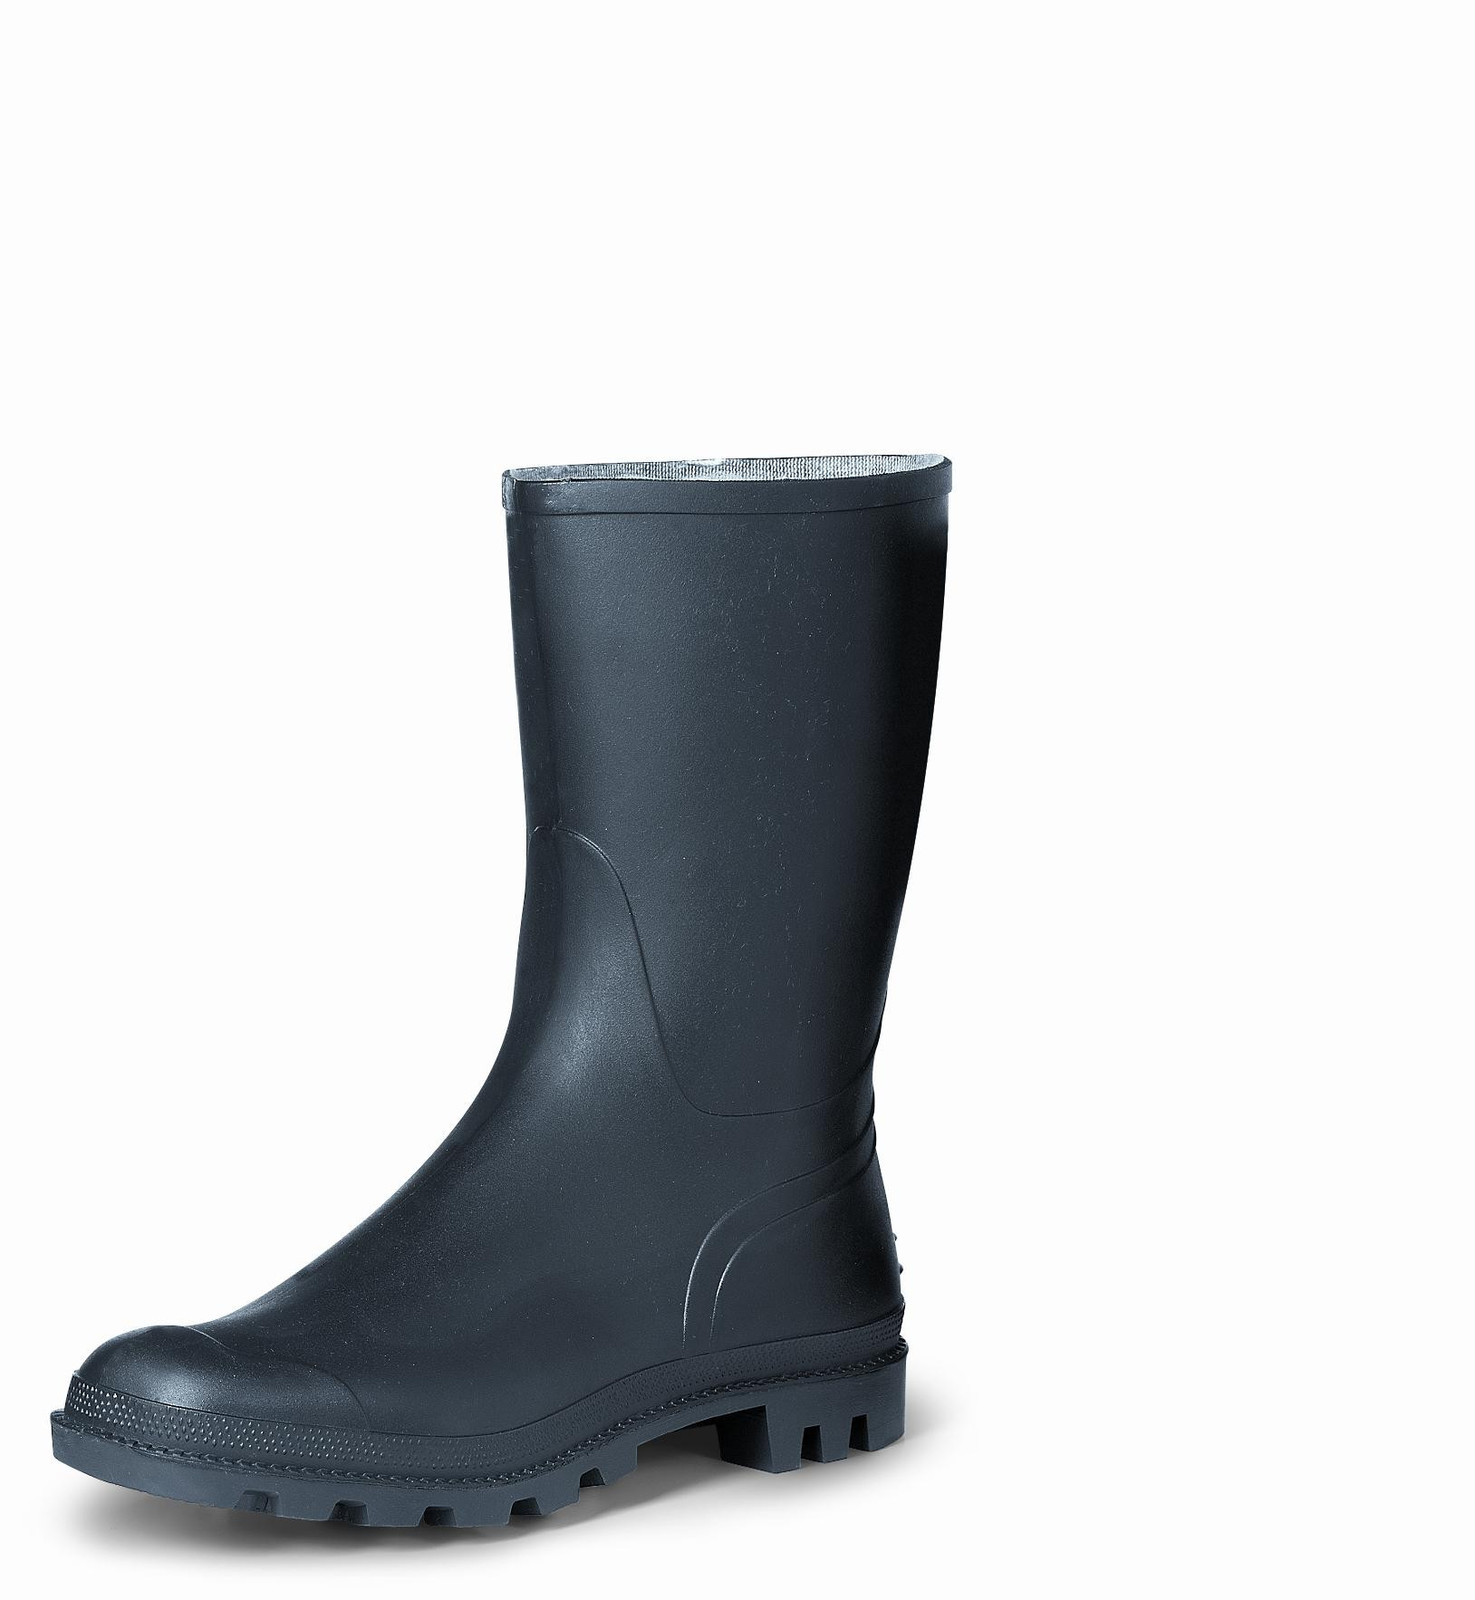 Gumáky Boots Troncheto PVC nízke - veľkosť: 38, farba: čierna